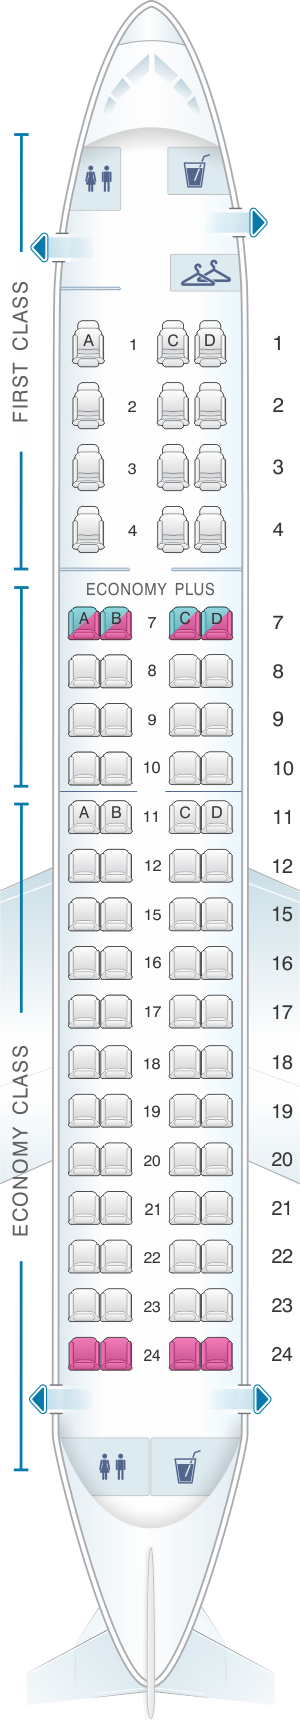 Plan De Cabine United Airlines Embraer EMB 175 SeatMaestro Fr